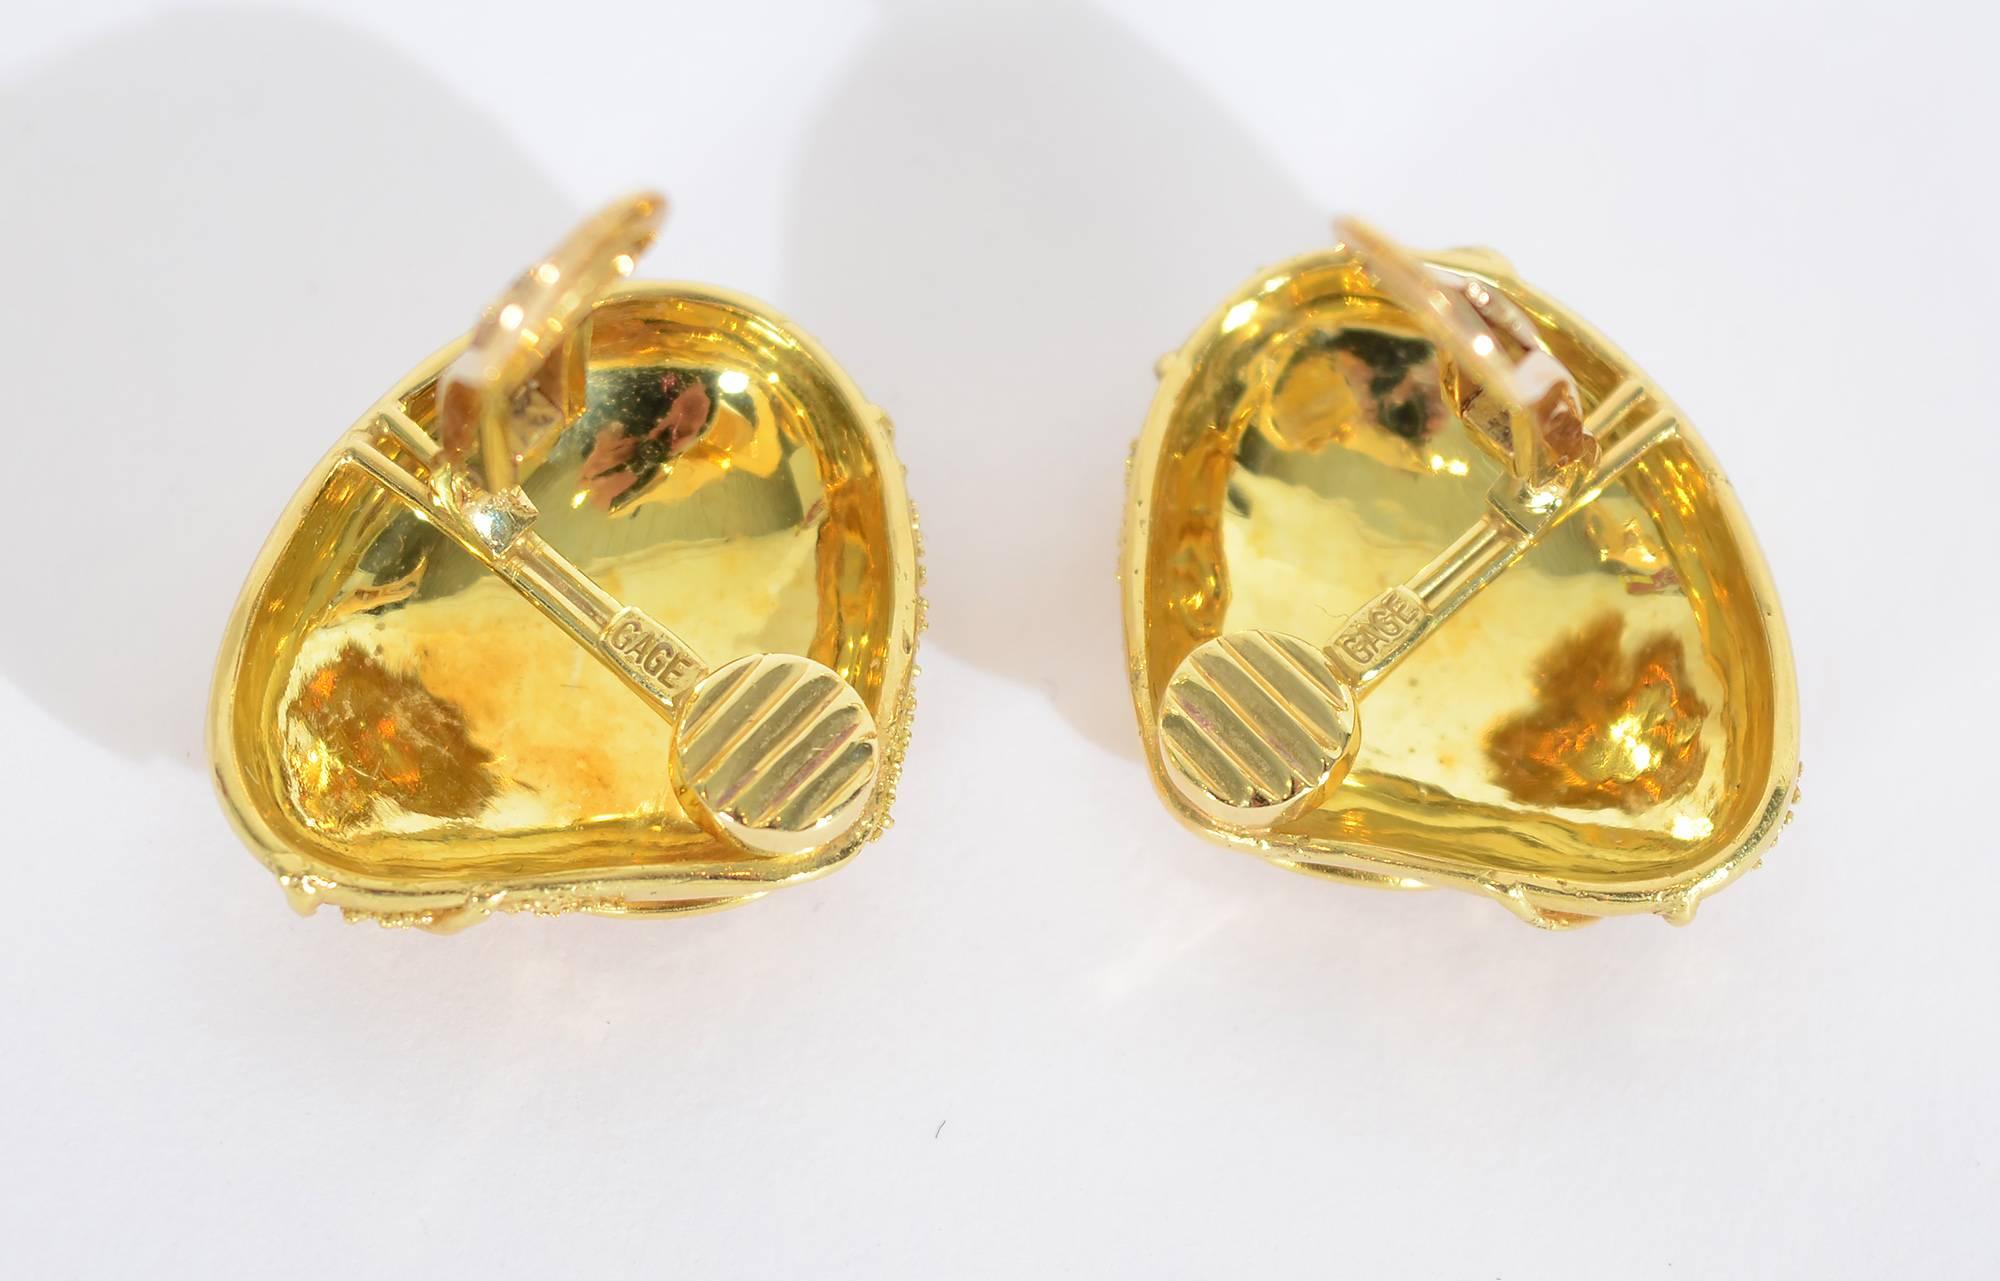 Kühne Ohrringe aus 18-karätigem Gold der britischen Juwelierin Elizabeth Gage in Granulation und Draht  beenden. Geschwungene Muster aus Golddraht scheinen die winzigen Goldperlen zu verankern. Die Rückseiten sind Clips, die in Pfosten umgewandelt